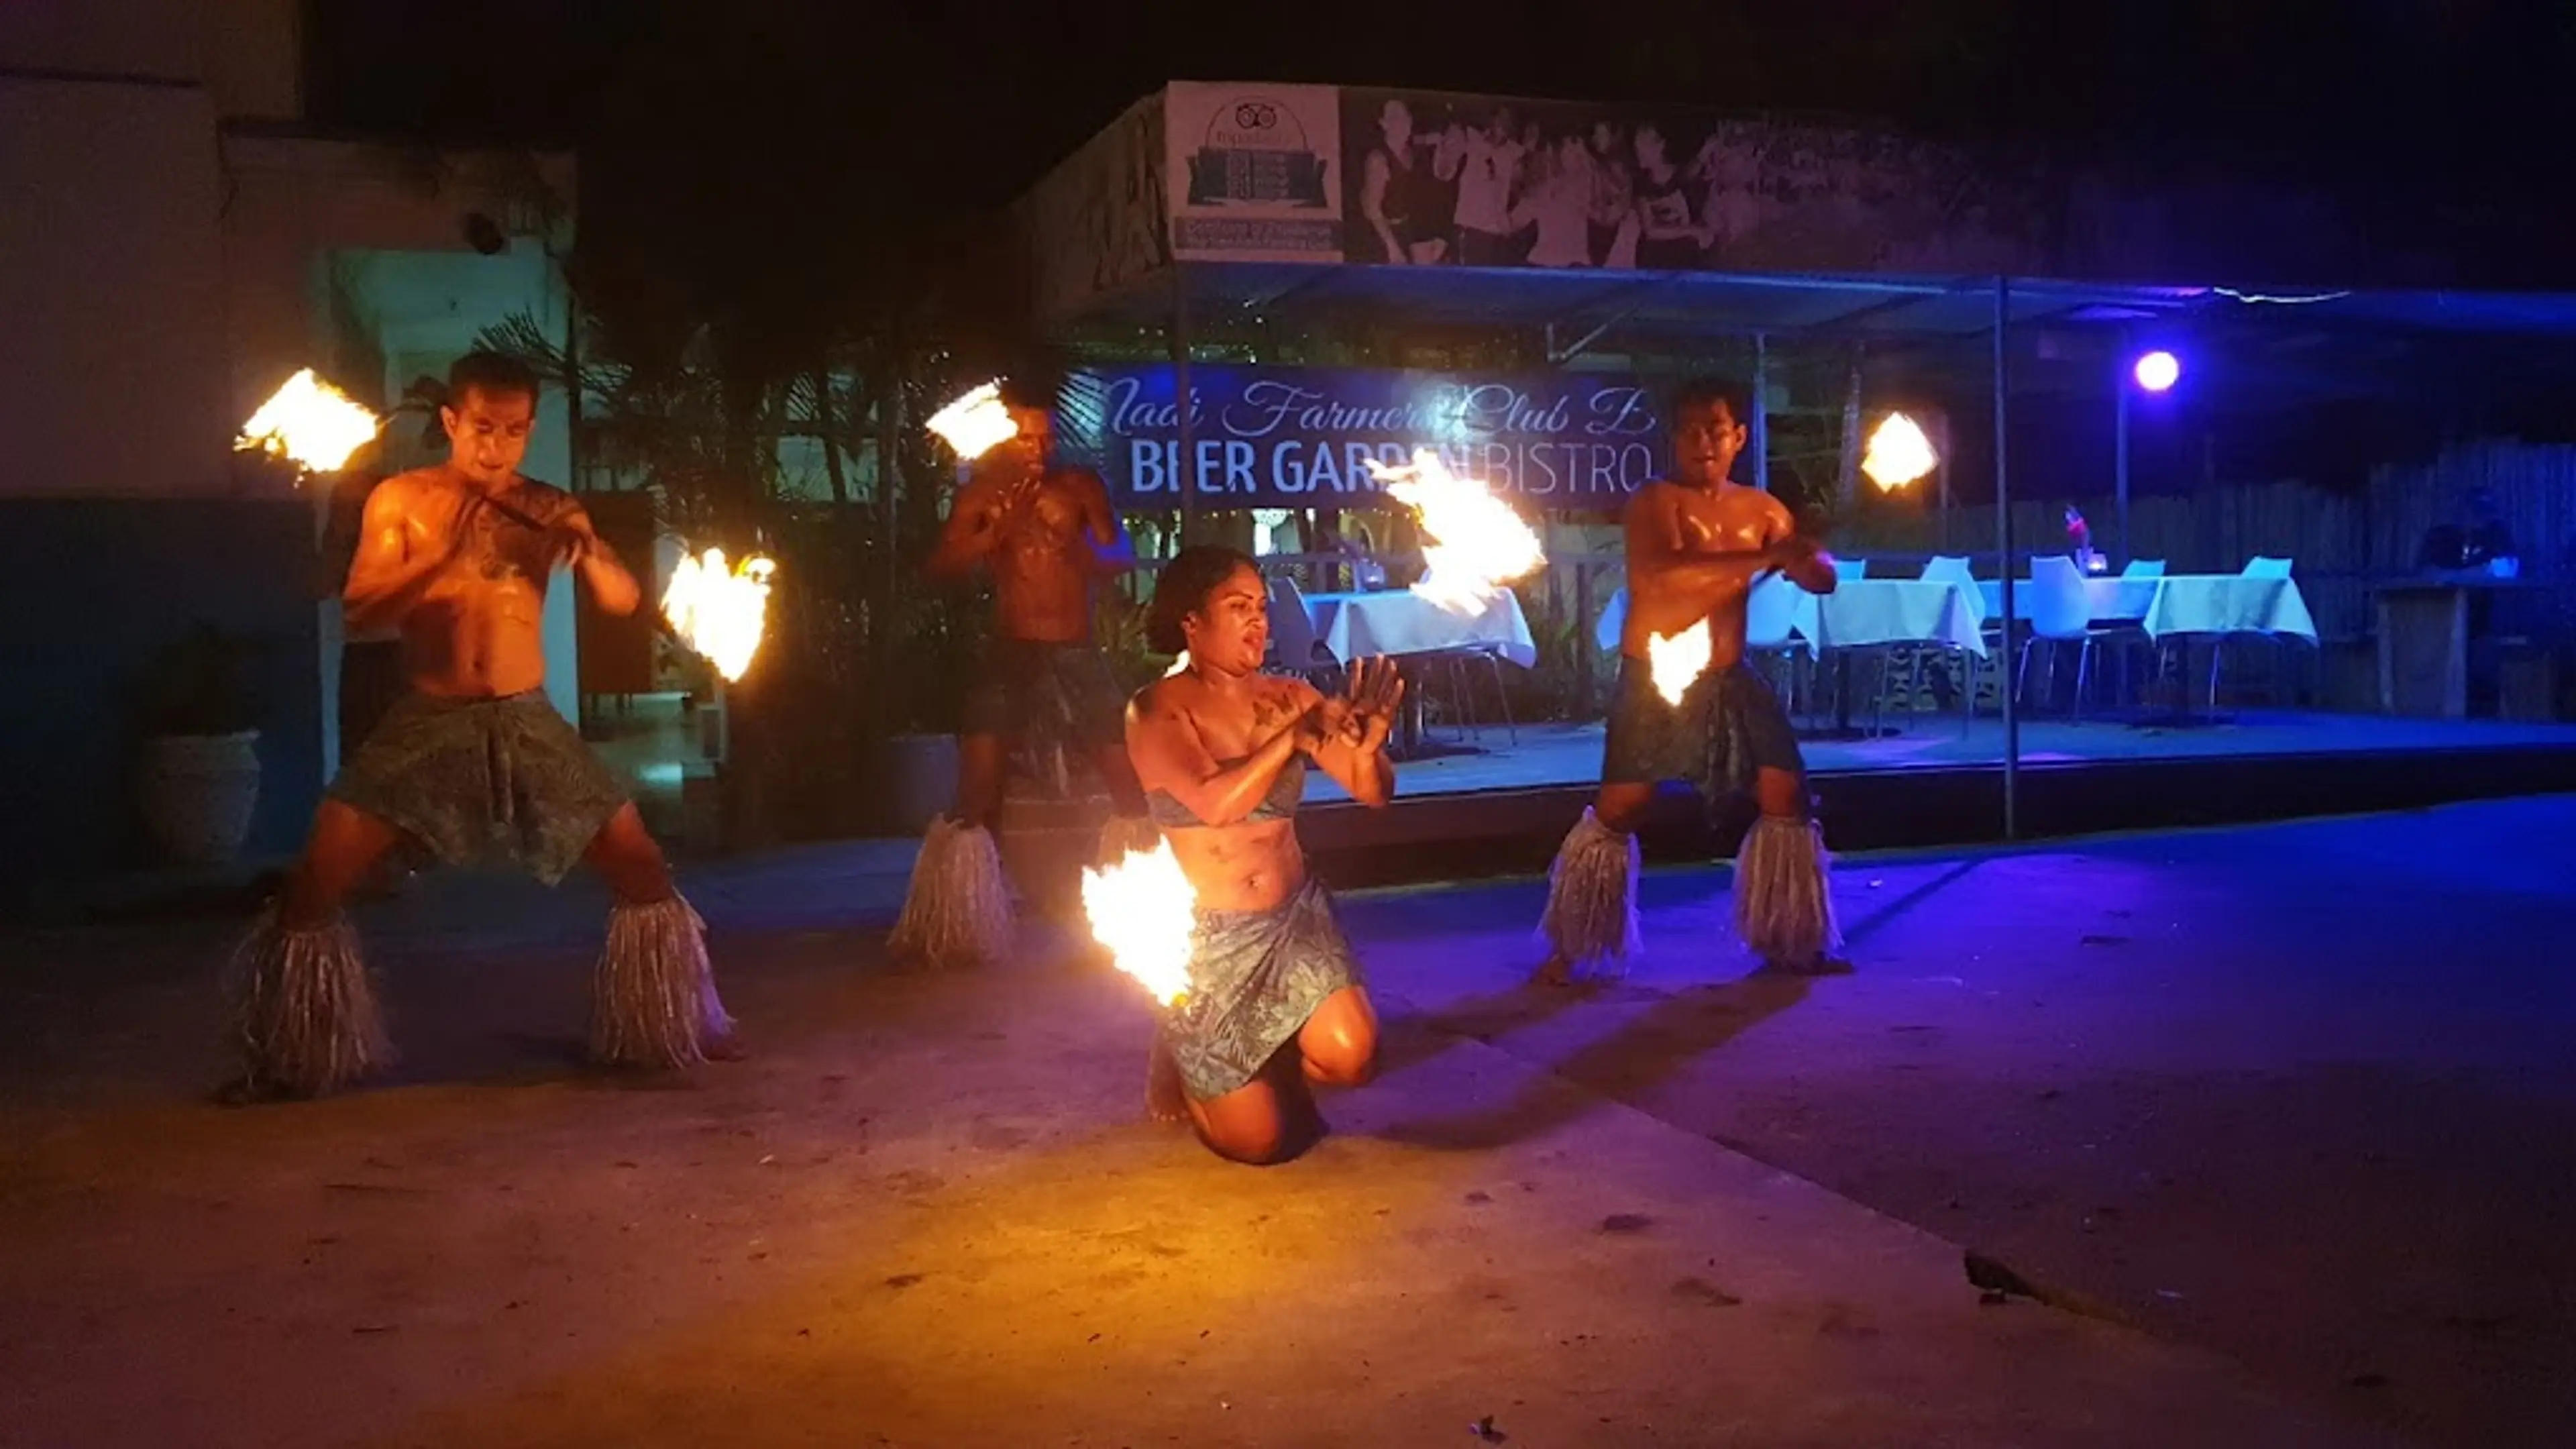 Fijian fire dancing performance